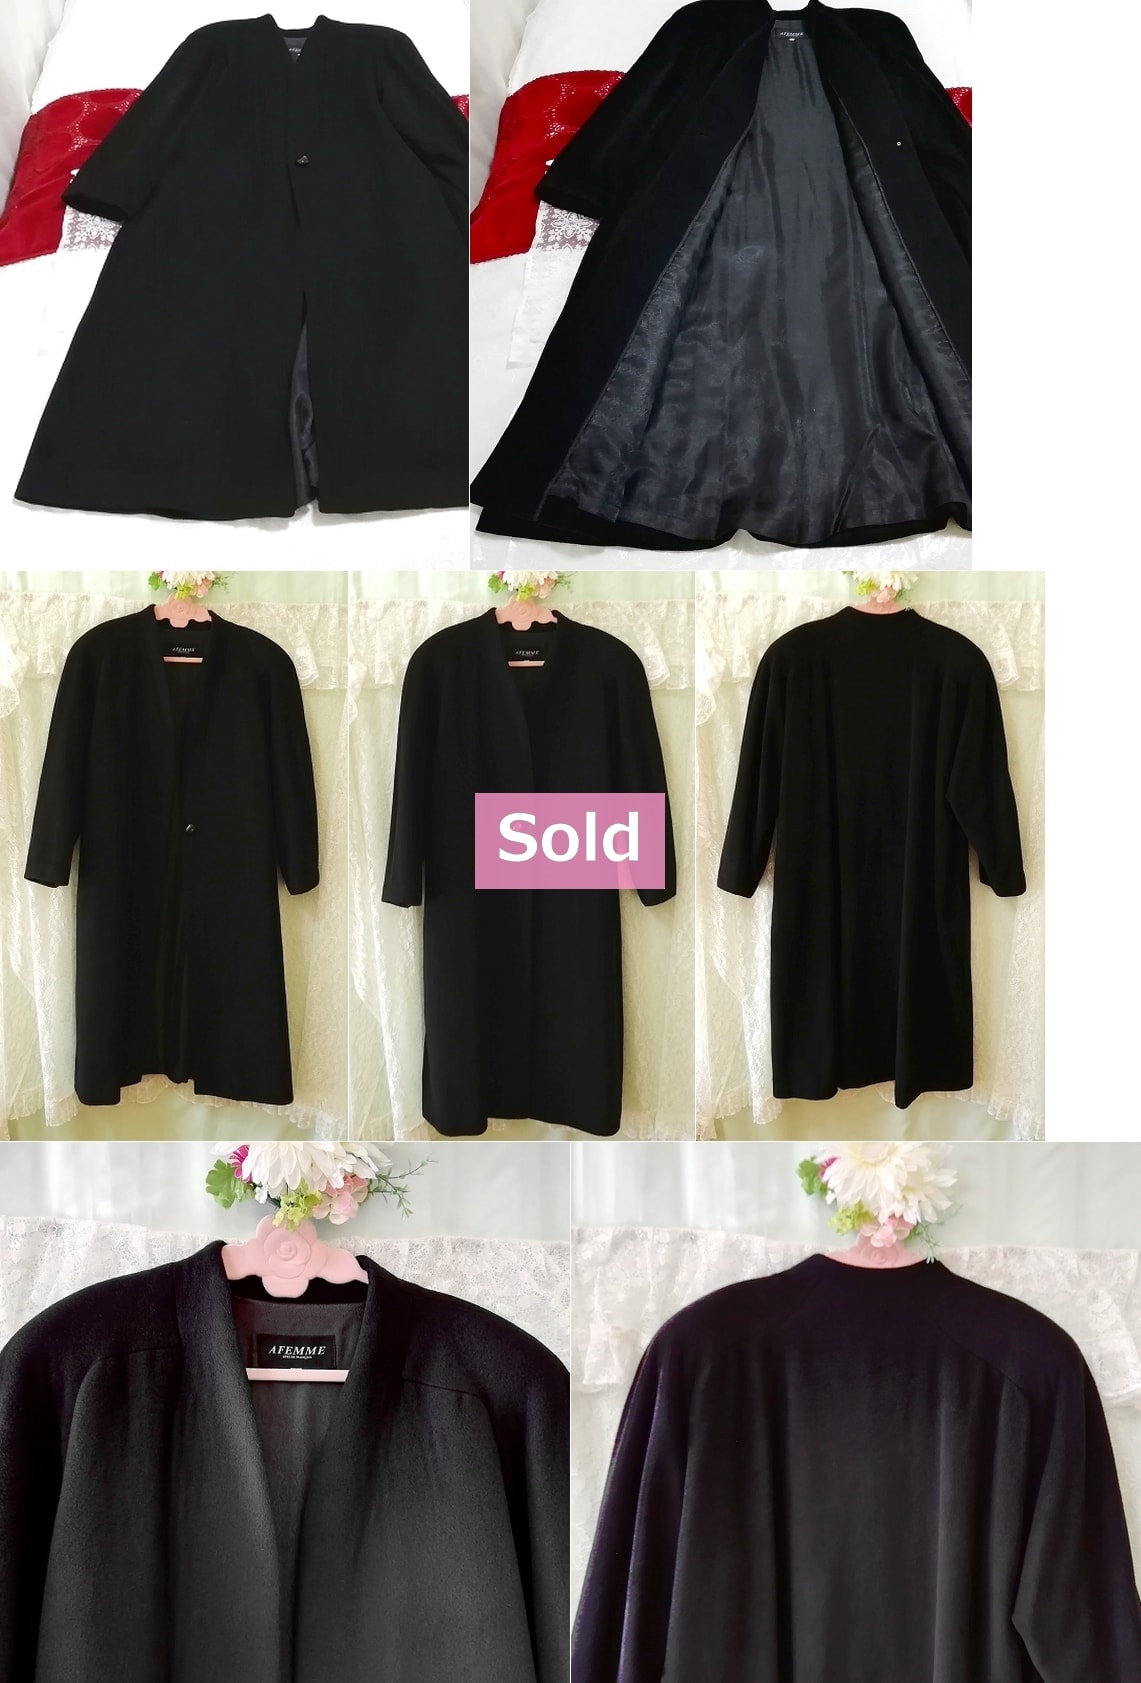 AFEMME Atelier Franais 100% black maxi long cardigan coat Cashmere 100% black maxi long cardigan coat